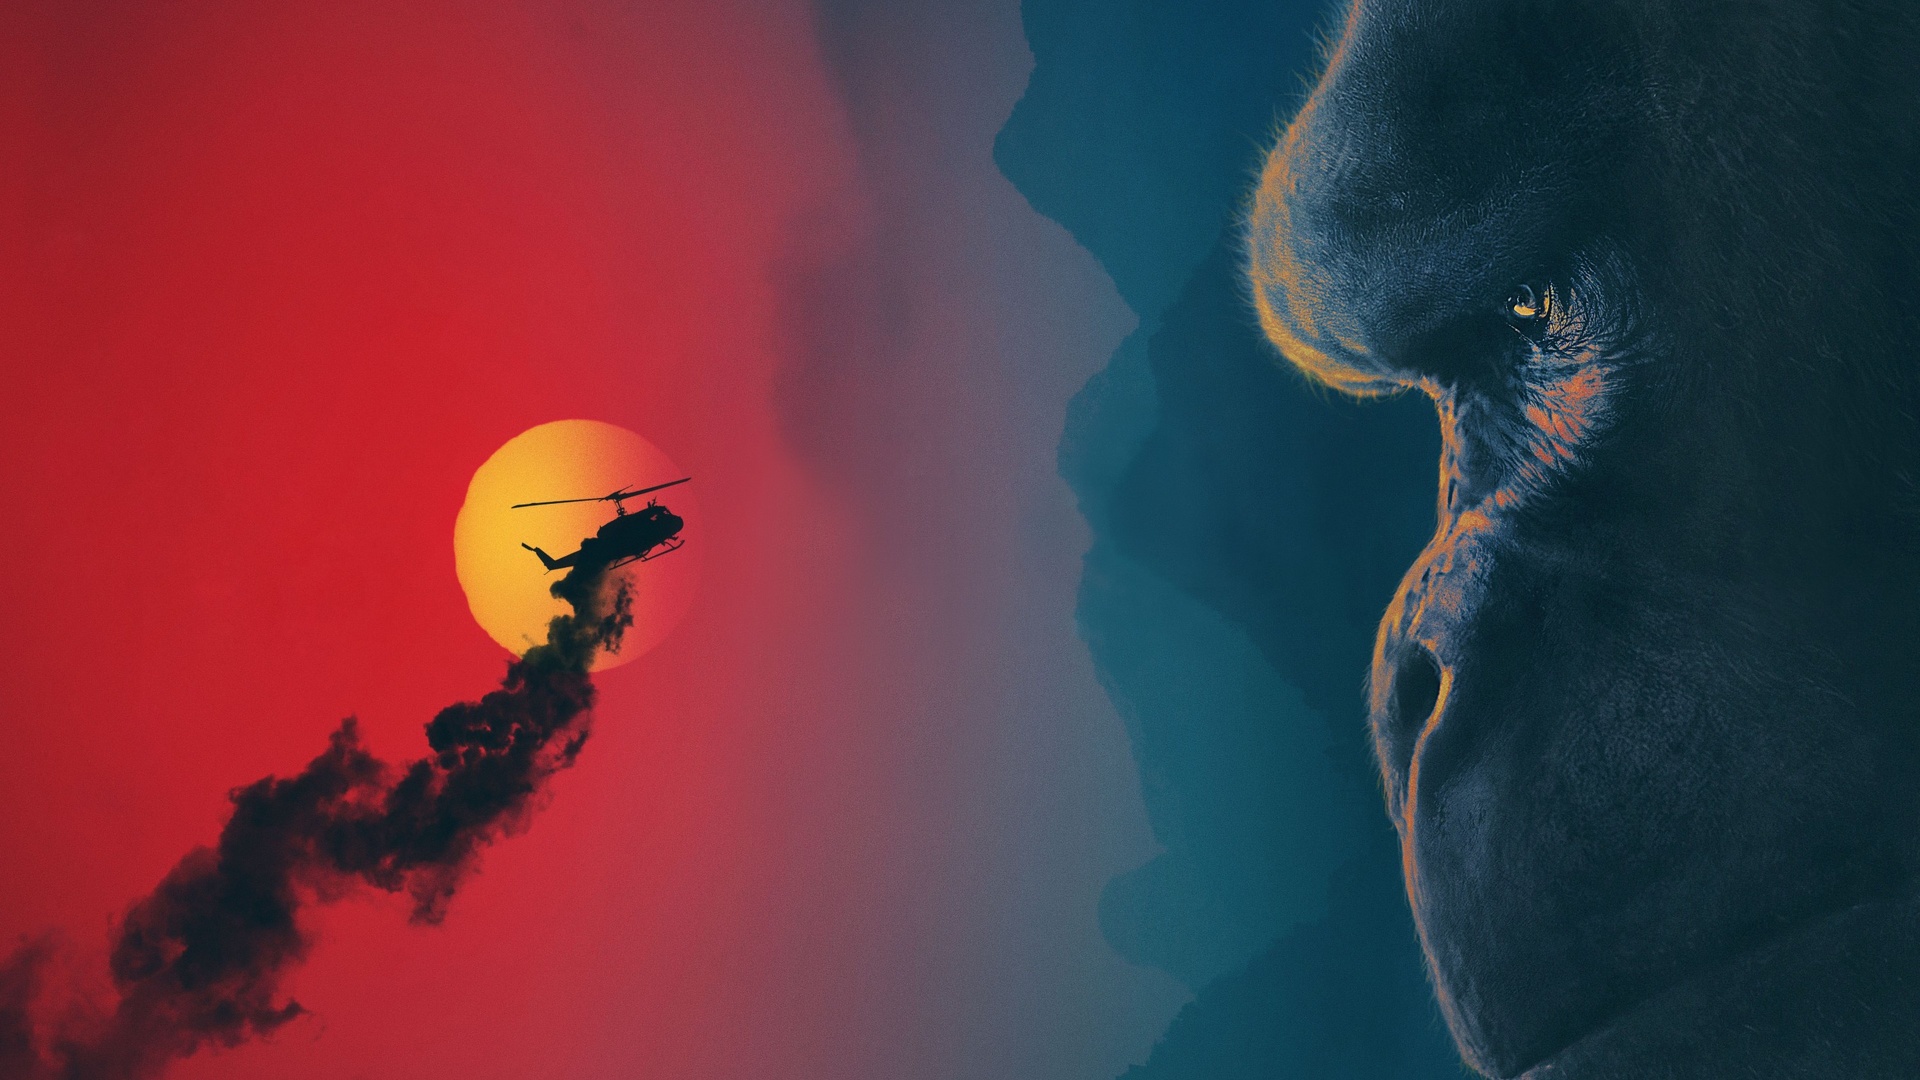 Kong - fond d'écran.jpg